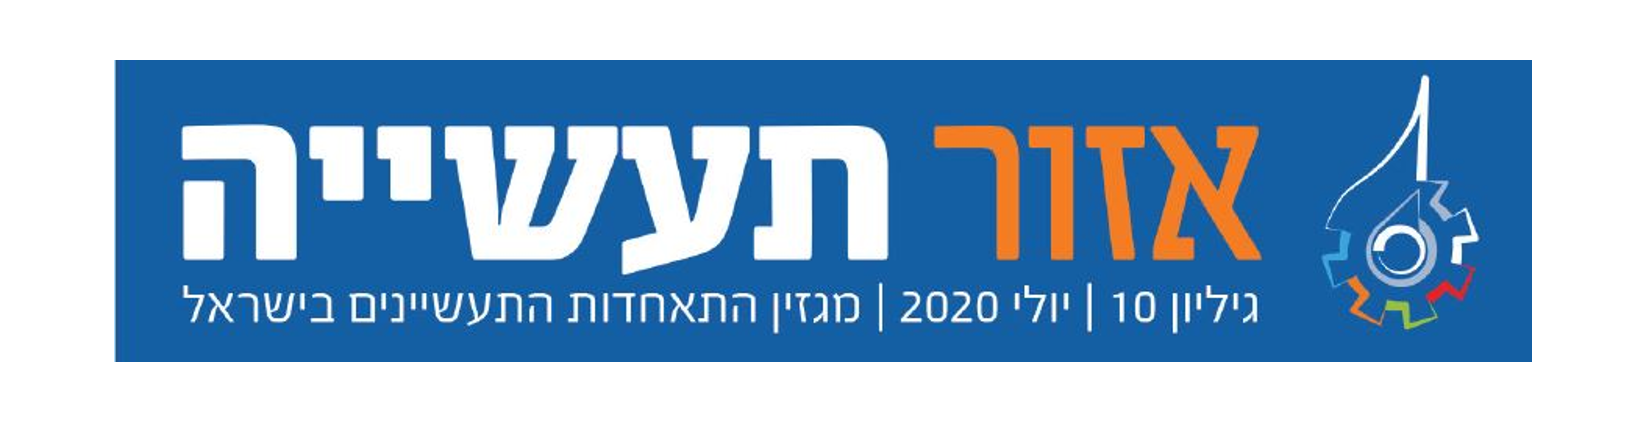 אזור תעשייה 10: חדשנות ישראלית בימי קורונה